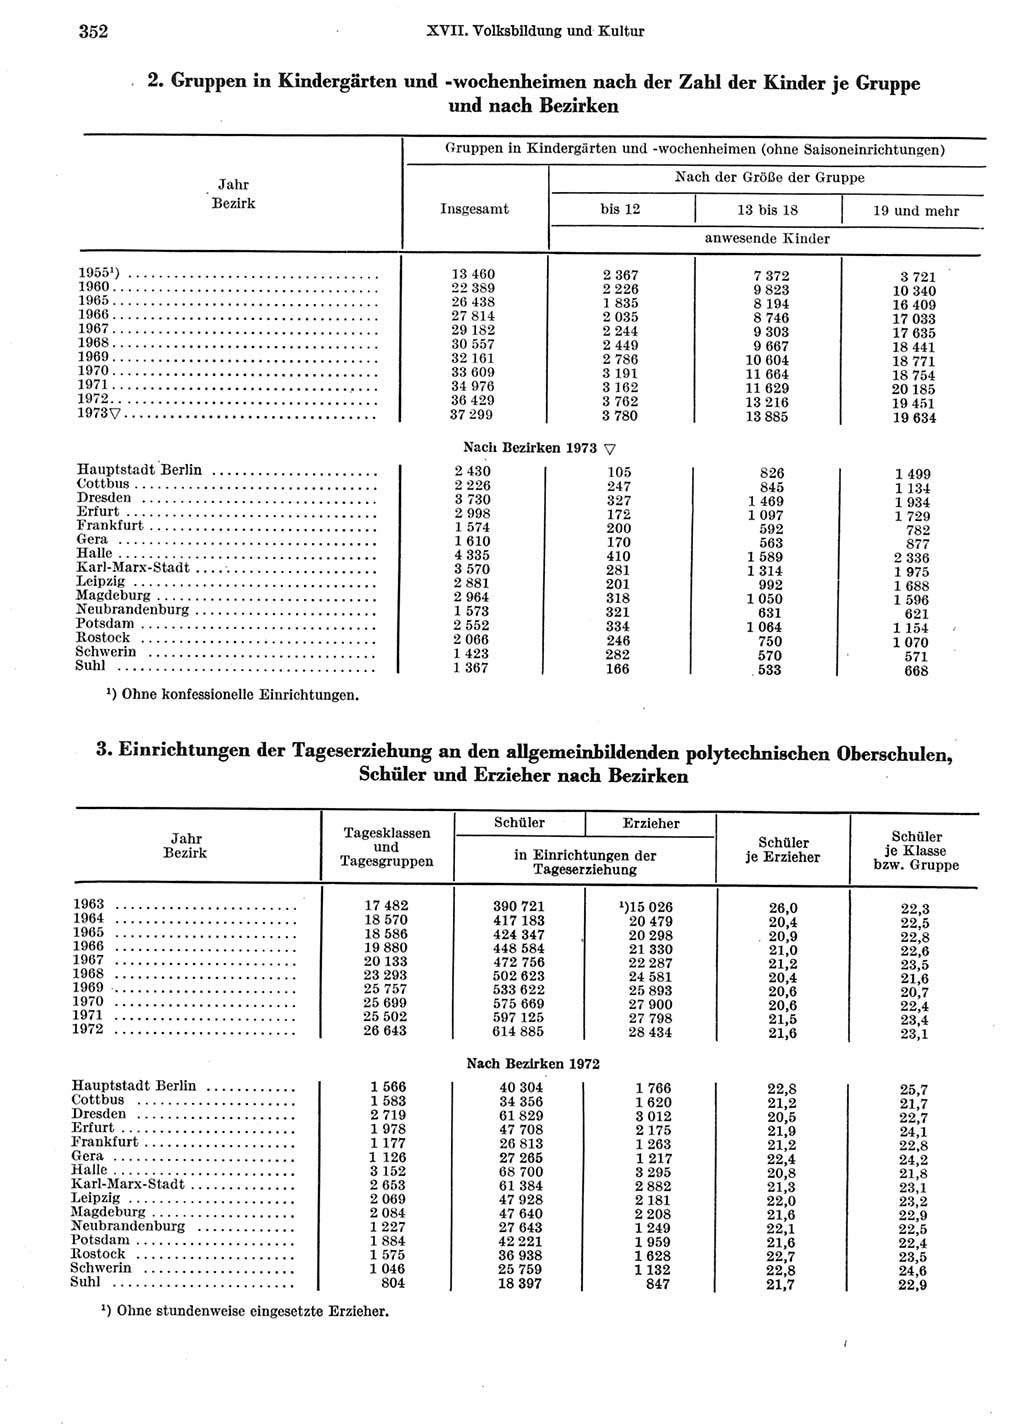 Statistisches Jahrbuch der Deutschen Demokratischen Republik (DDR) 1974, Seite 352 (Stat. Jb. DDR 1974, S. 352)